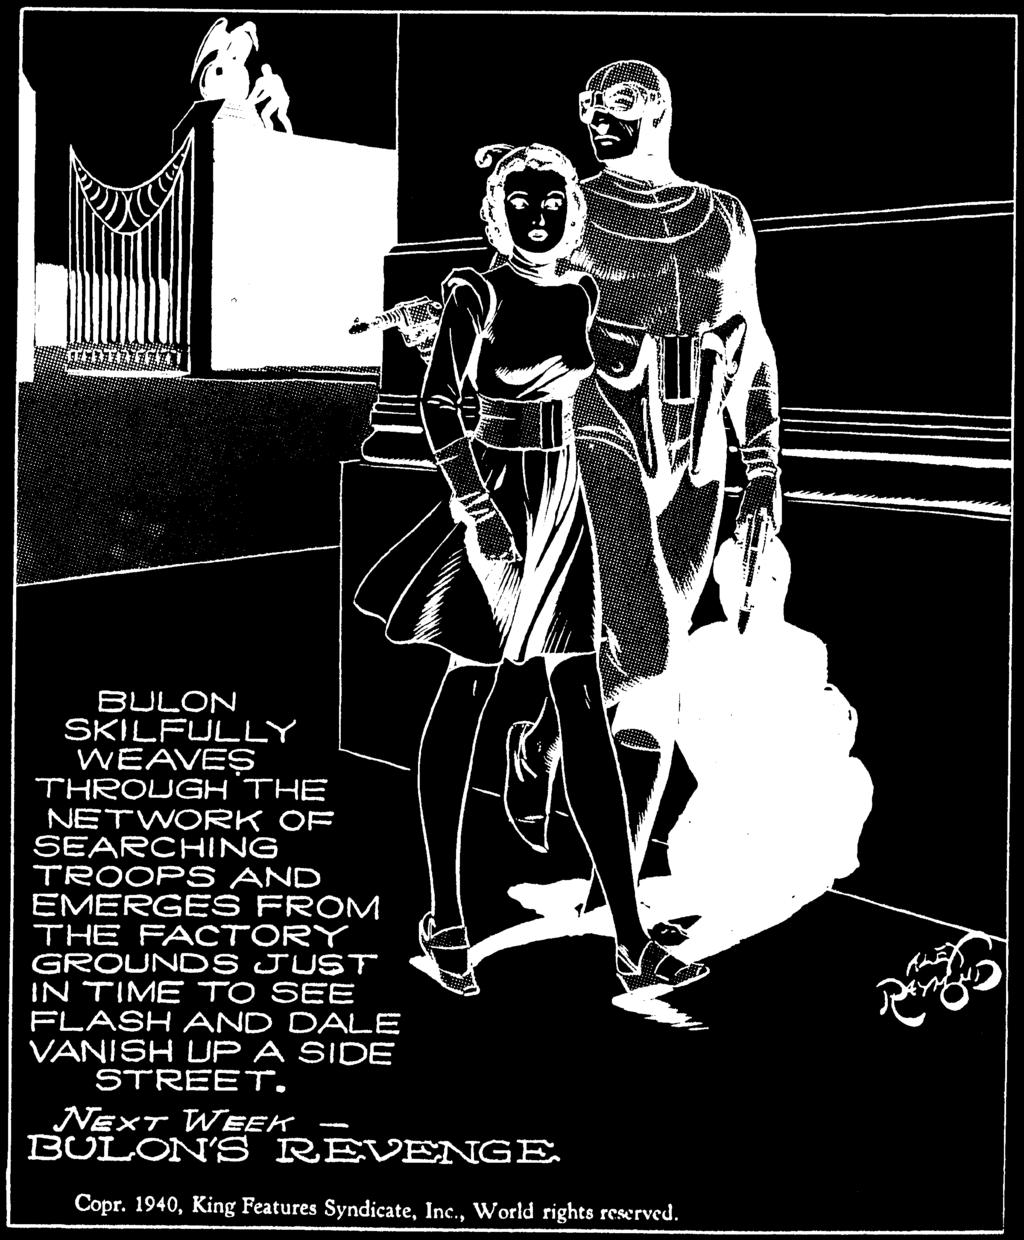 Este plano general de la serie Flash Gordon, dibujado por Alex Raymond en 1940, permite integrar a los dos